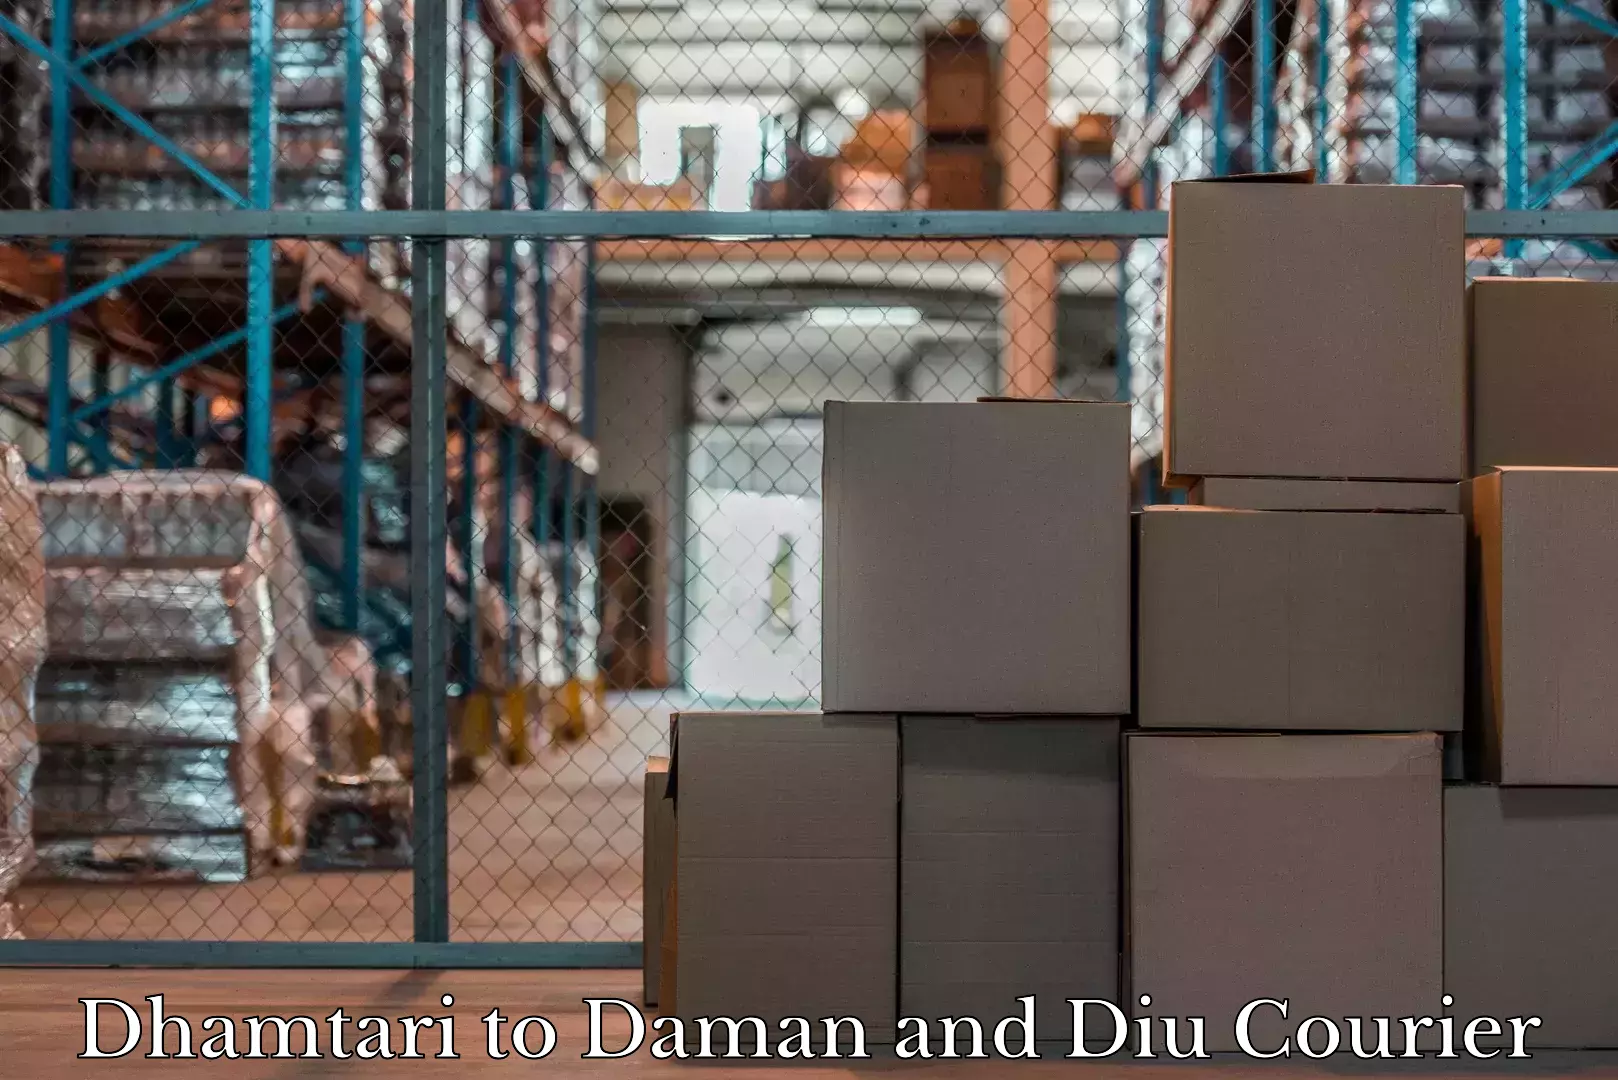 Baggage shipping experts Dhamtari to Daman and Diu